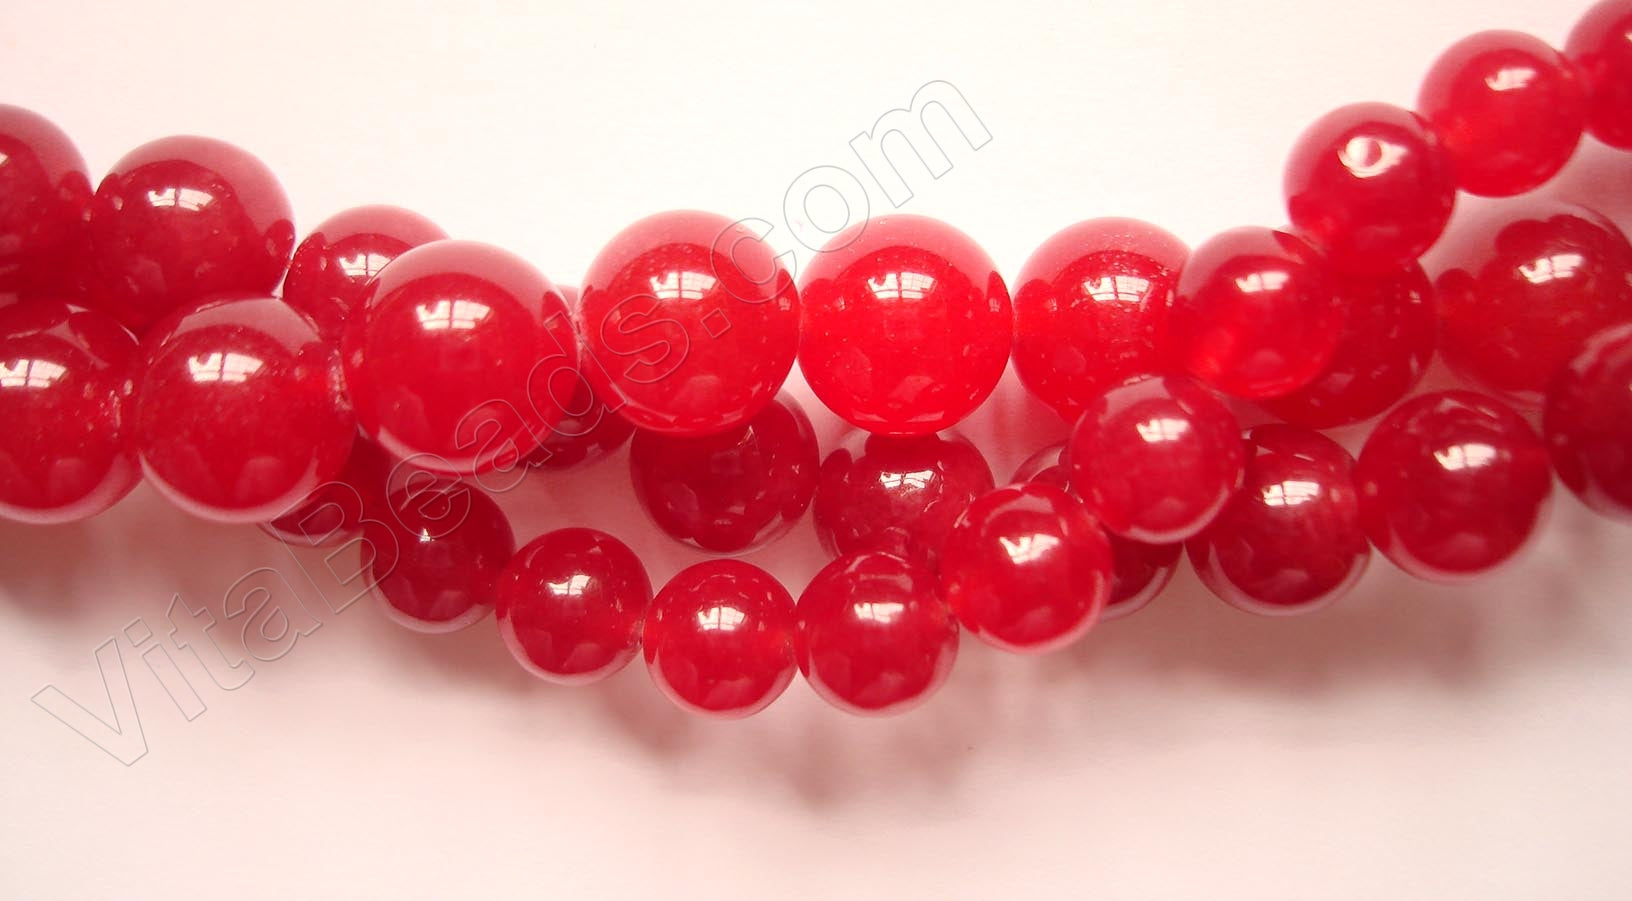 Cherry Jade  -  Smooth Round Beads 16"